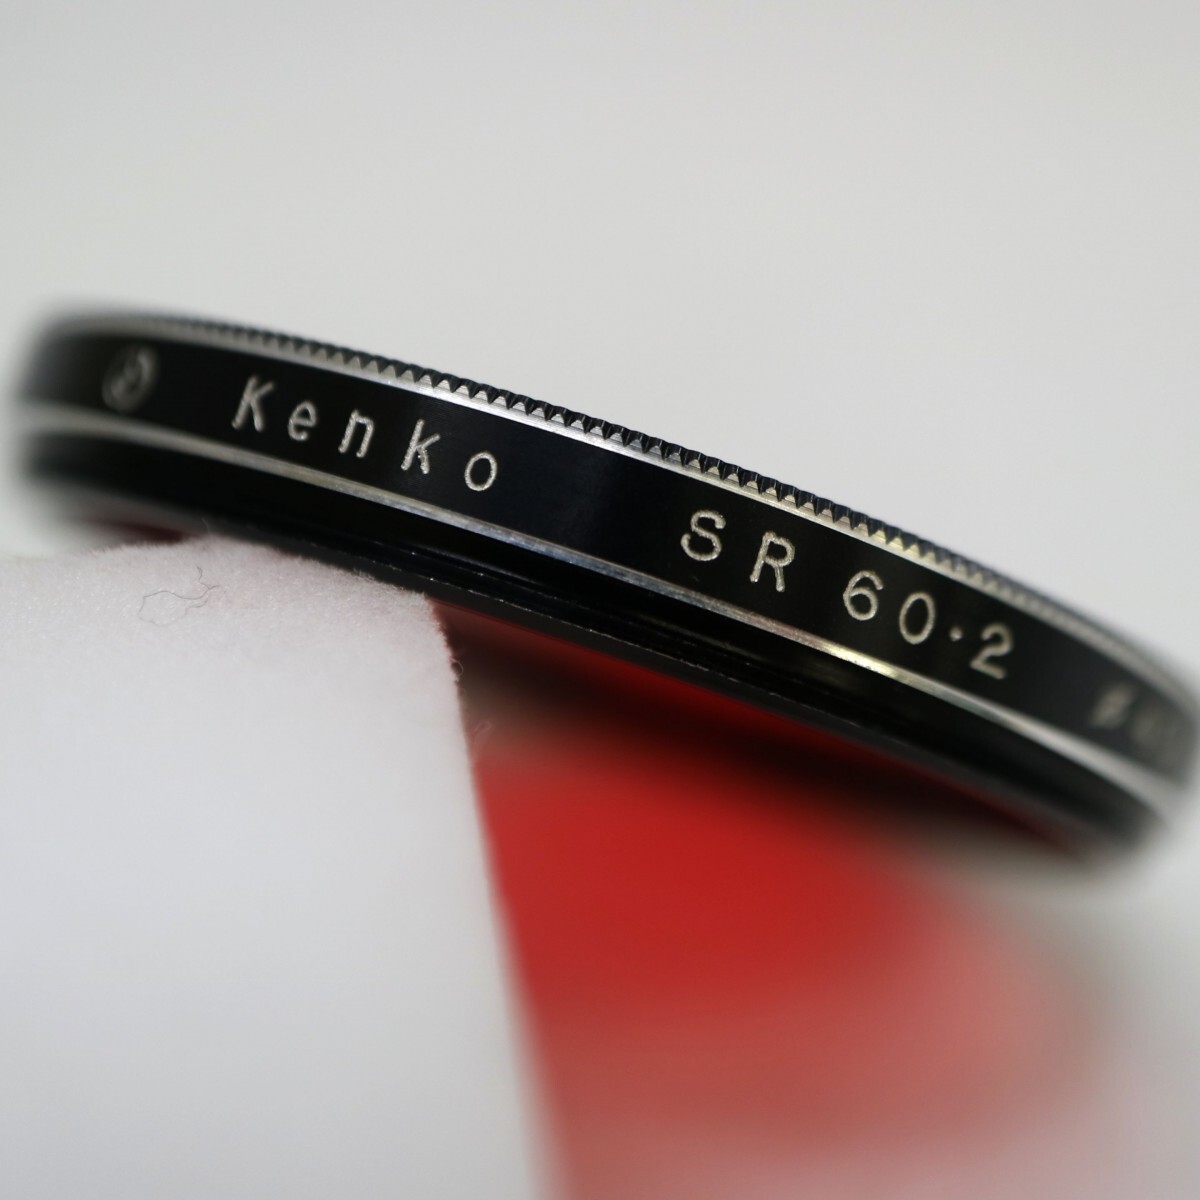 Kenko SR 60・2 φ40.5 R1 ケンコー 40.5mm径 ねじ込み式 黒枠 レッドフィルター 白黒写真用 コントラスト効果(強) 現状品 ／ 04-00787_画像4